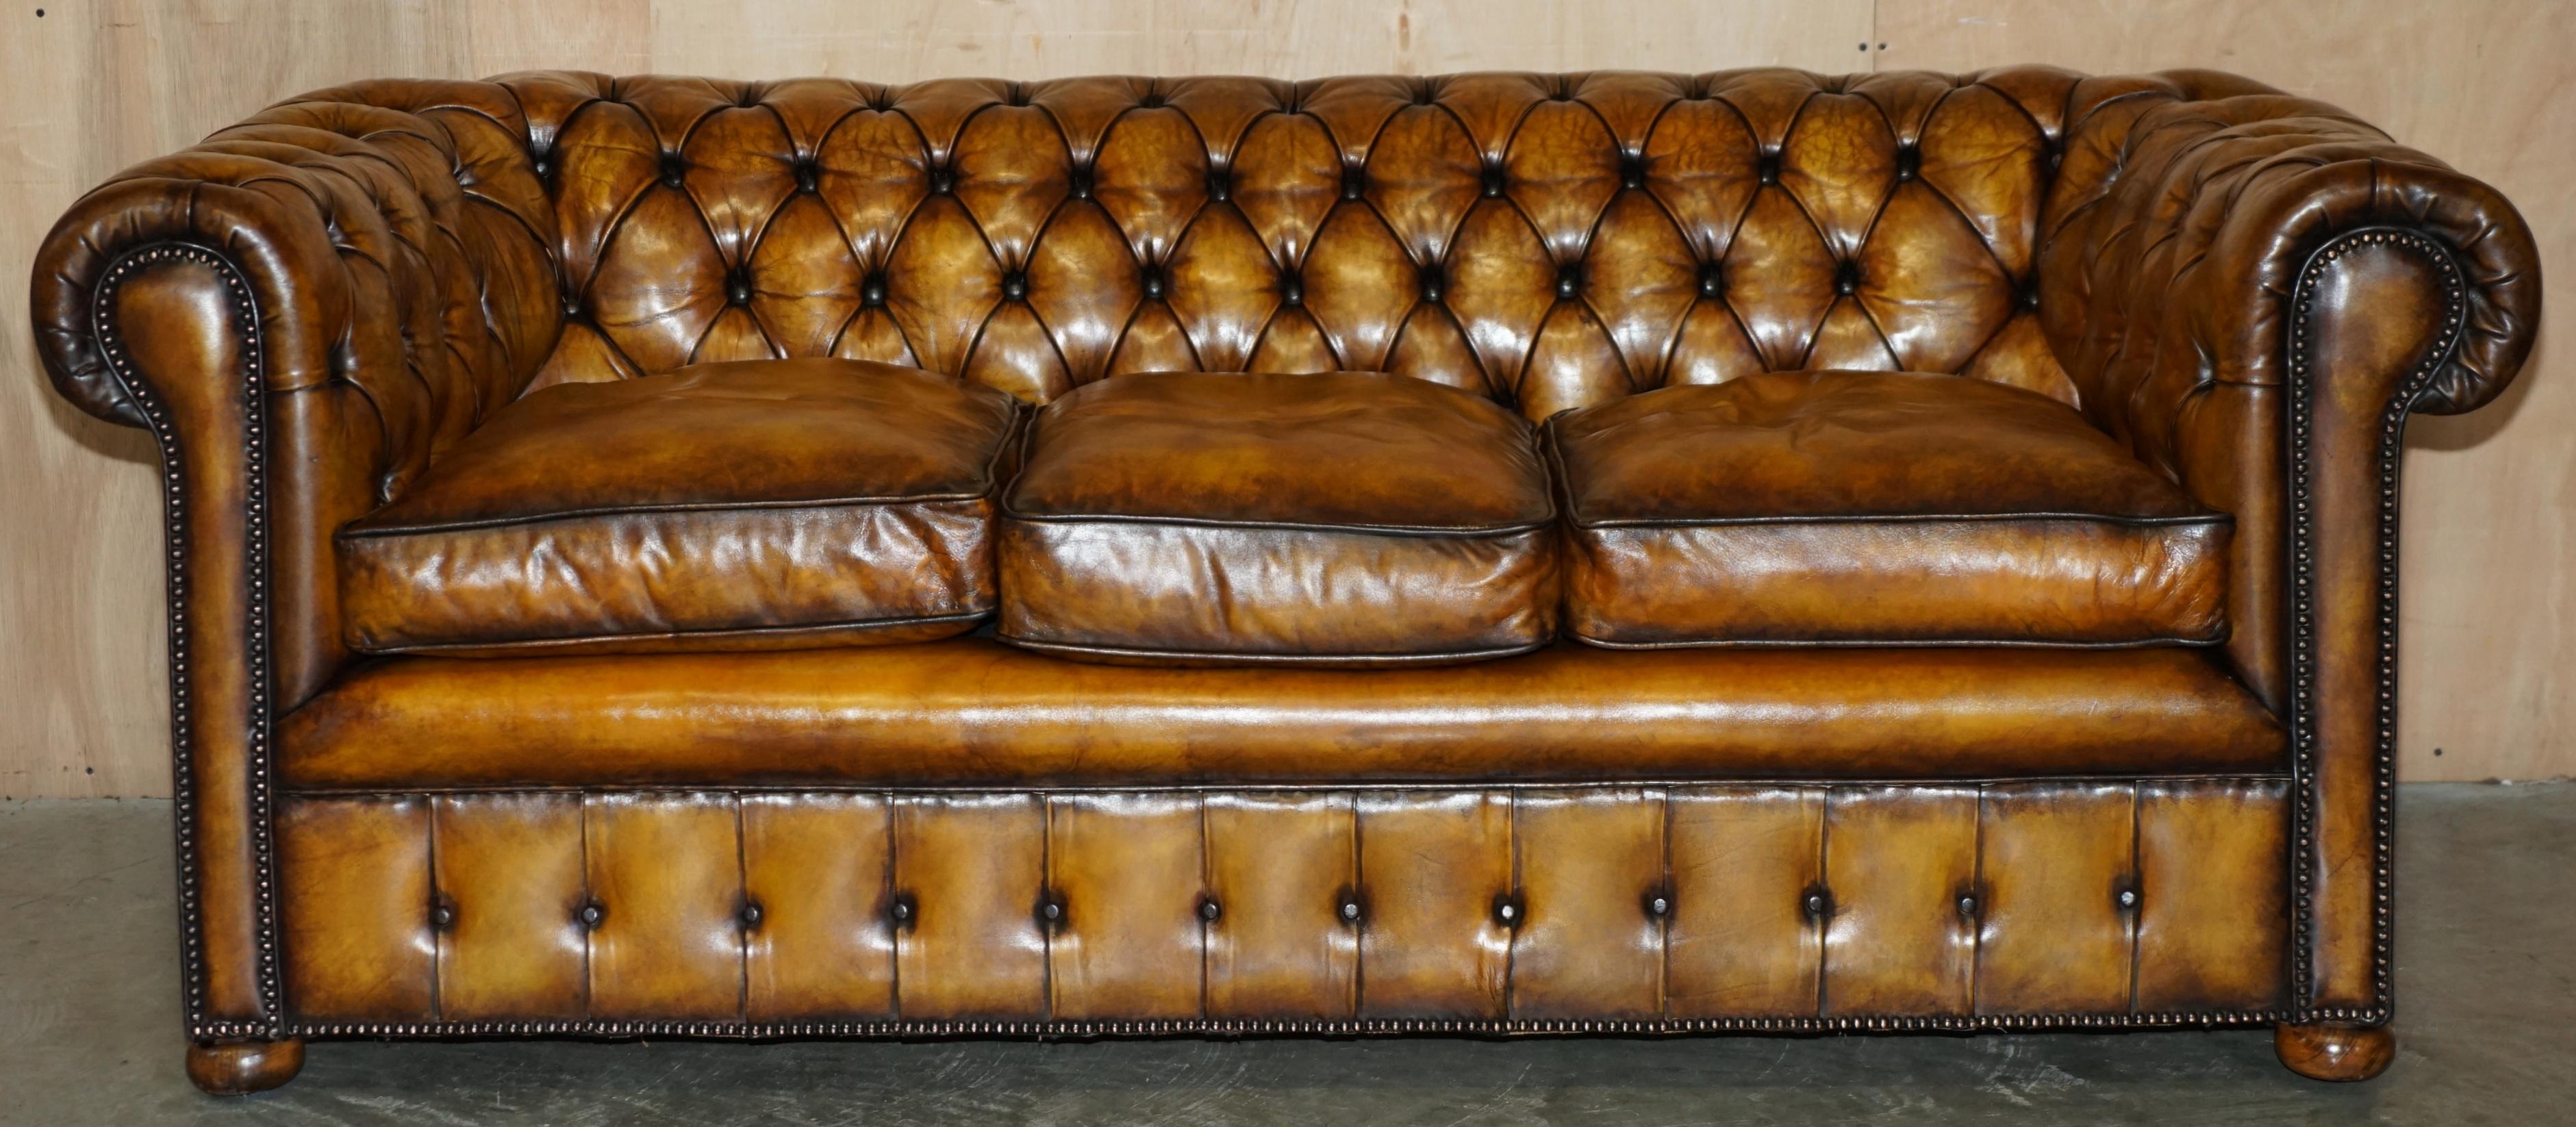 Royal House Antiques

Royal House Antiques freut sich, dieses äußerst seltene, hochgradig sammelwürdige Chesterfield-Sofa aus den 1940er Jahren, das Teil eines Sets ist, zum Verkauf anzubieten.

Bitte beachten Sie die Lieferkosten aufgeführt ist nur